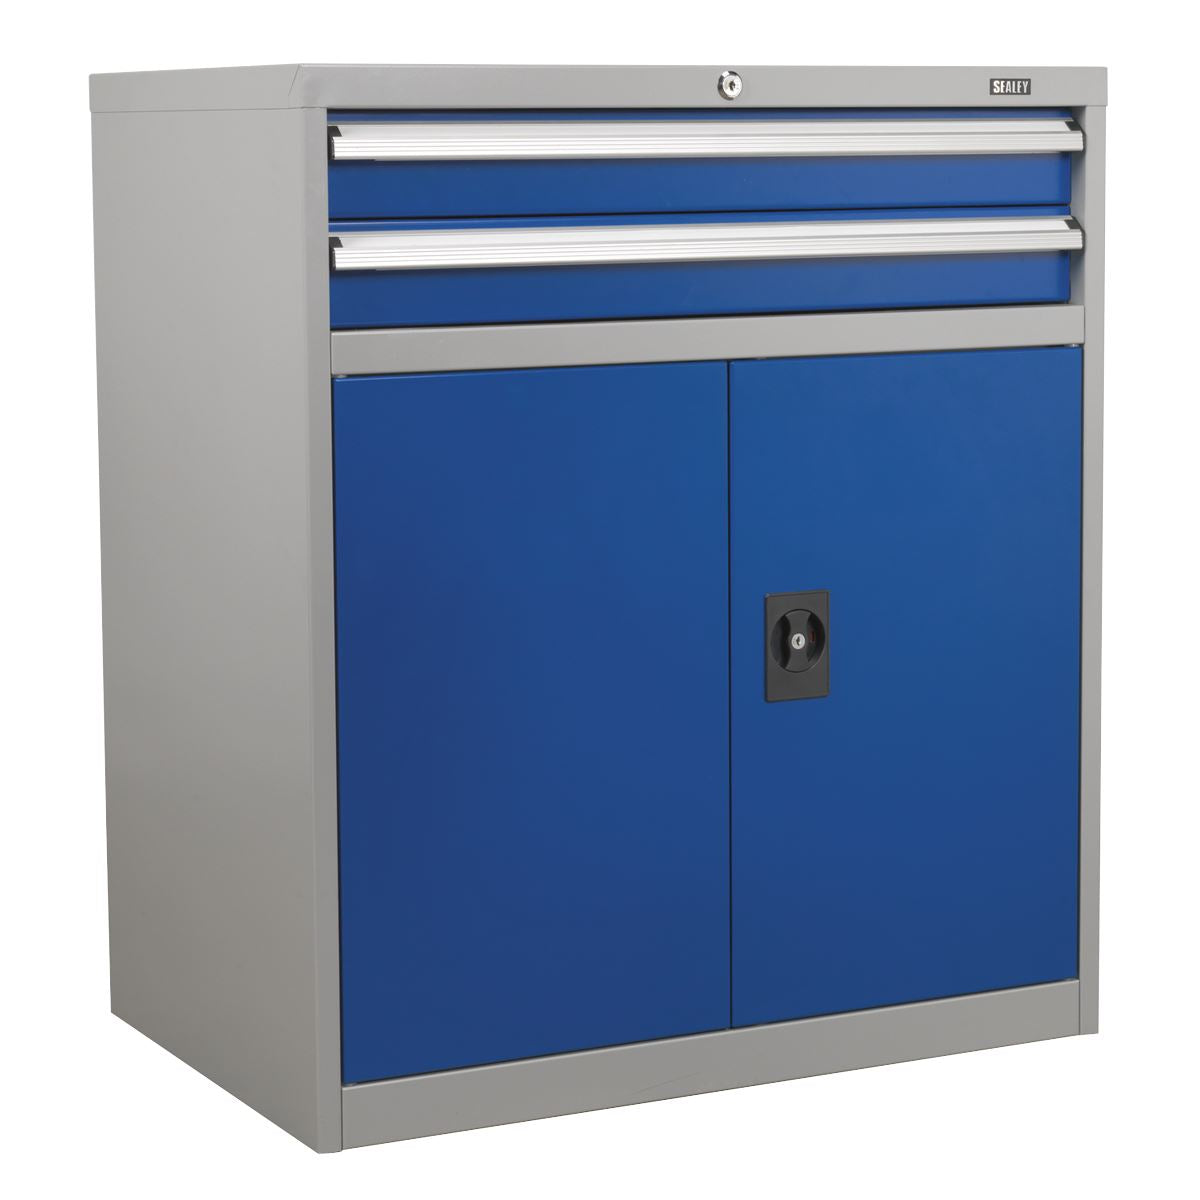 Sealey Premier Industrial Industrial Cabinet 2 Drawer & 1 Shelf Double Locker